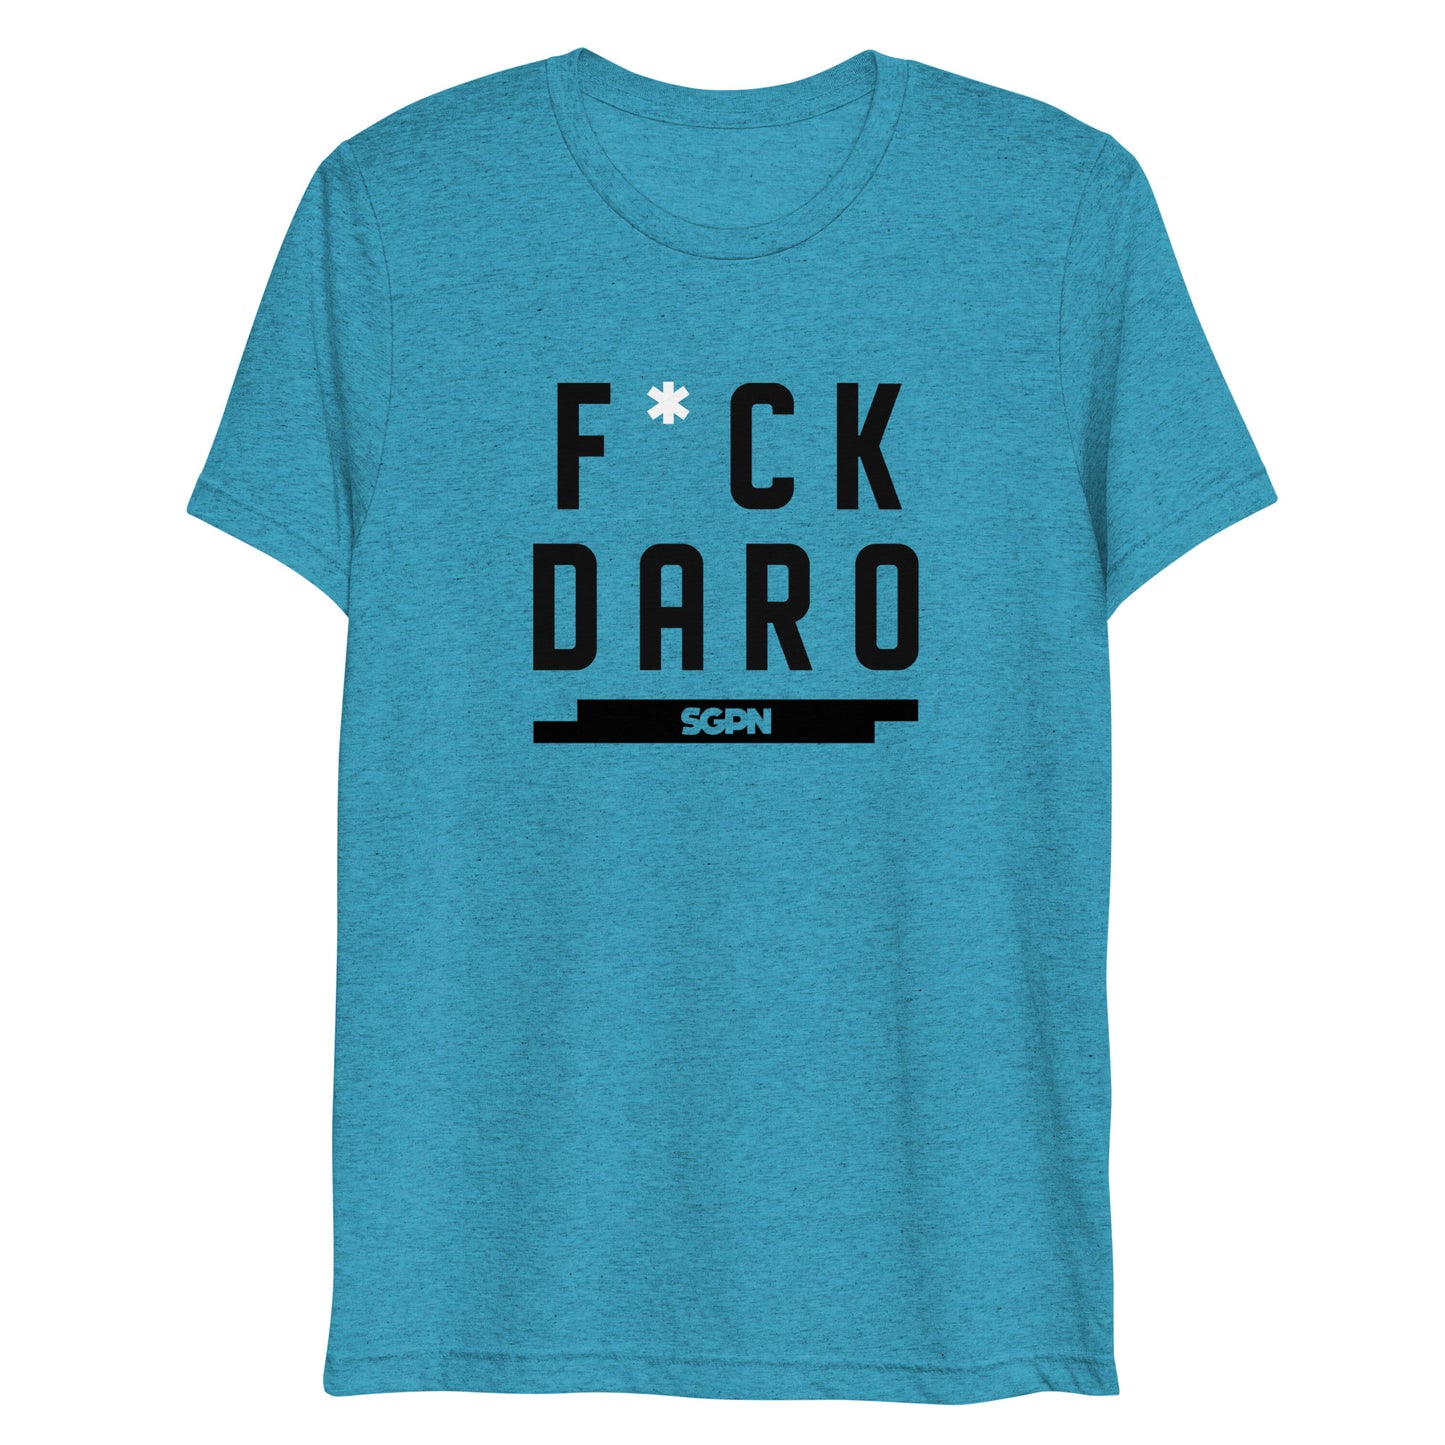 F*ck Daro - SGPN - short sleeve t-shirt